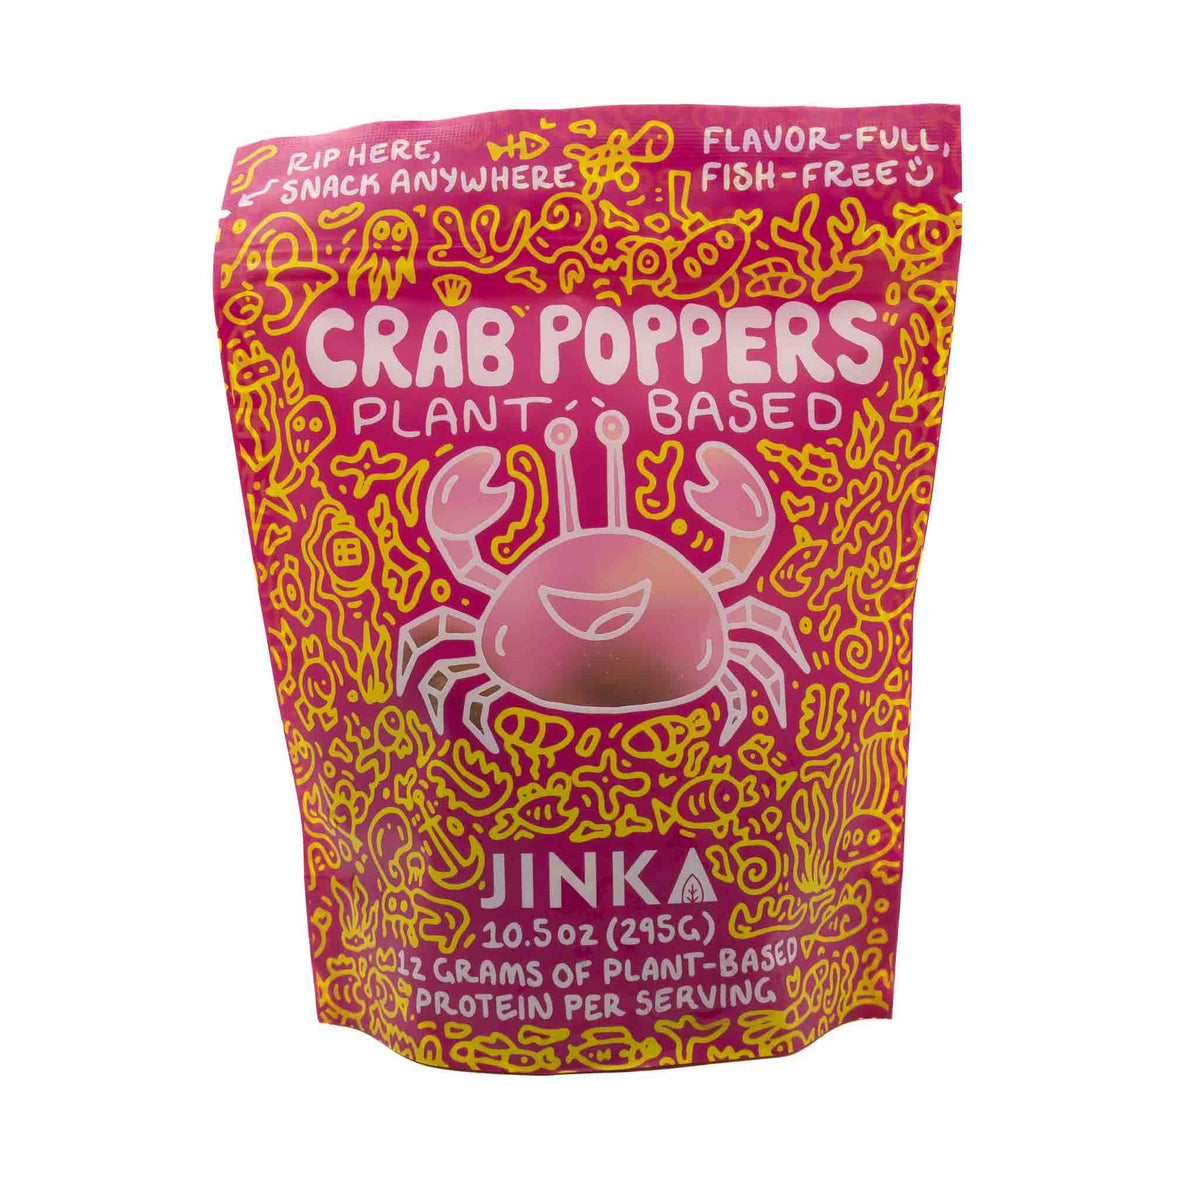 Jinka Poppers Crab Cake